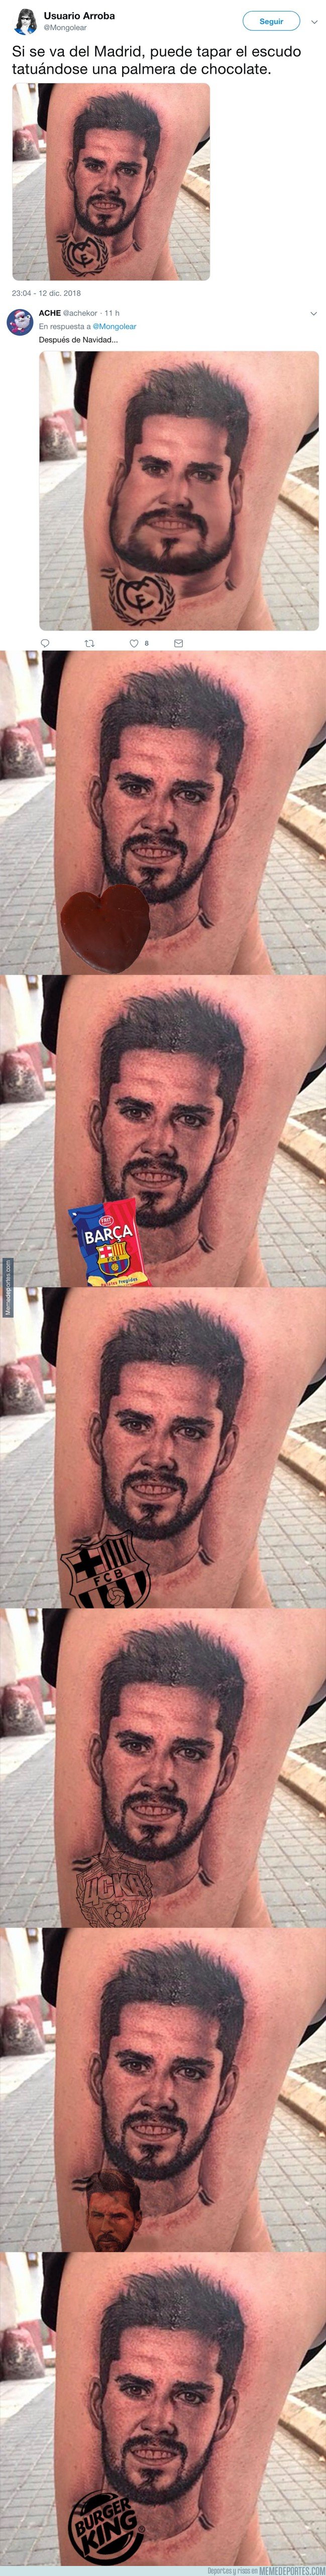 1058954 - Twitter da ideas de cómo quedaría este tatuaje de Isco si se va del Madrid